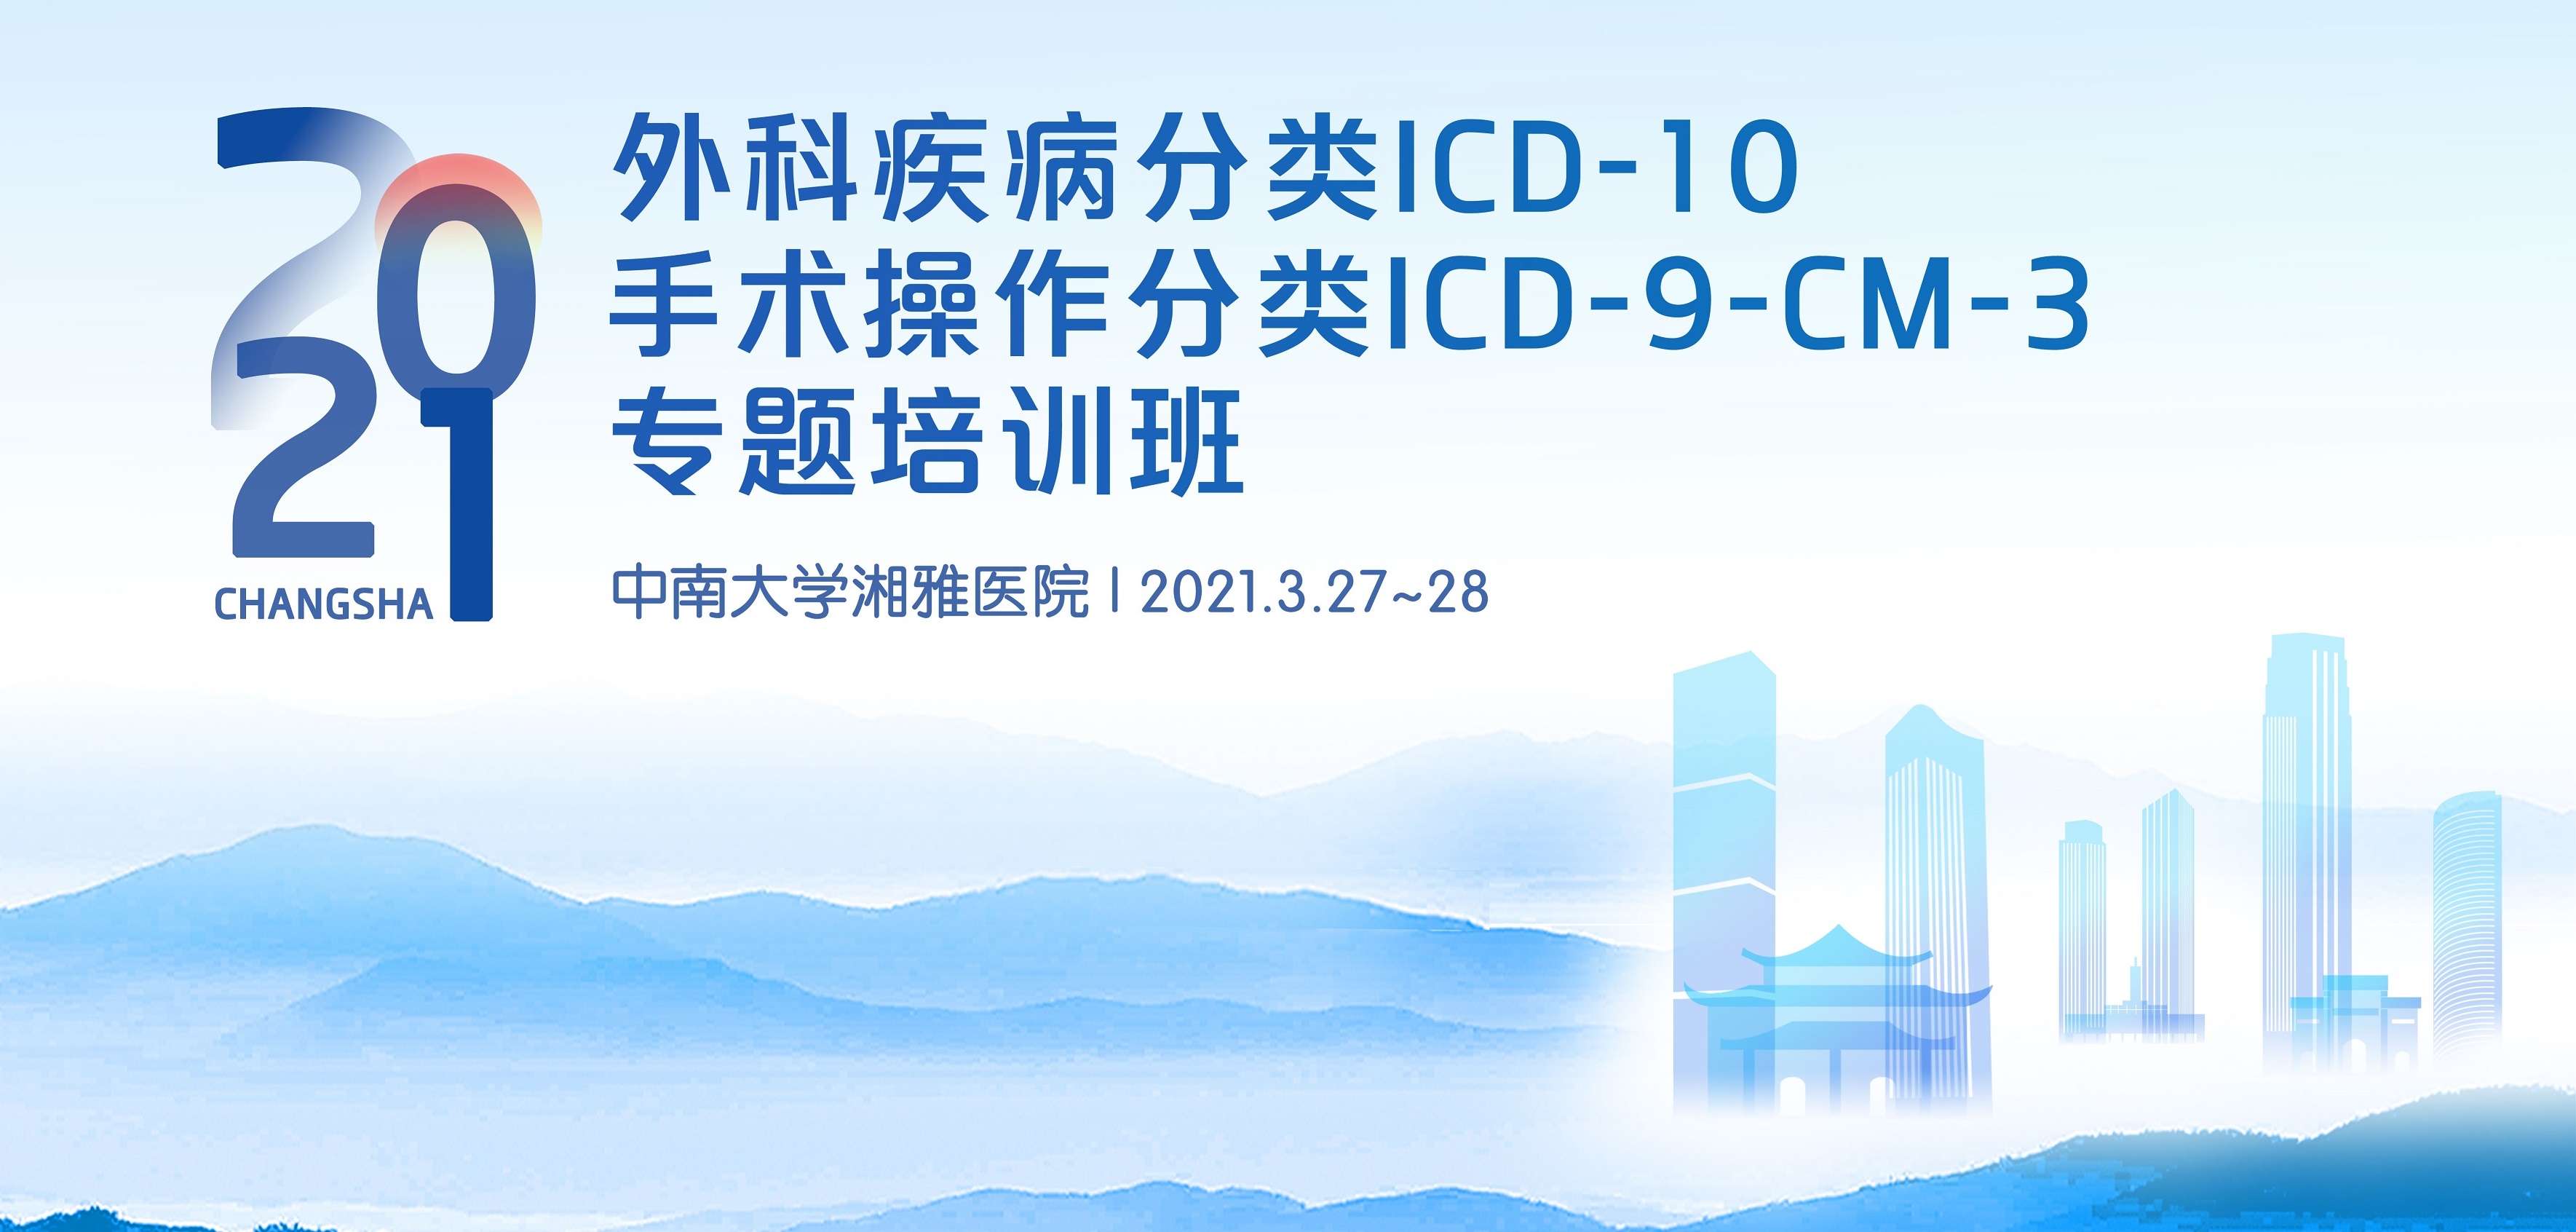 外科疾病分类ICD-10和手术操作 分类ICD-9-CM-3专题培训班